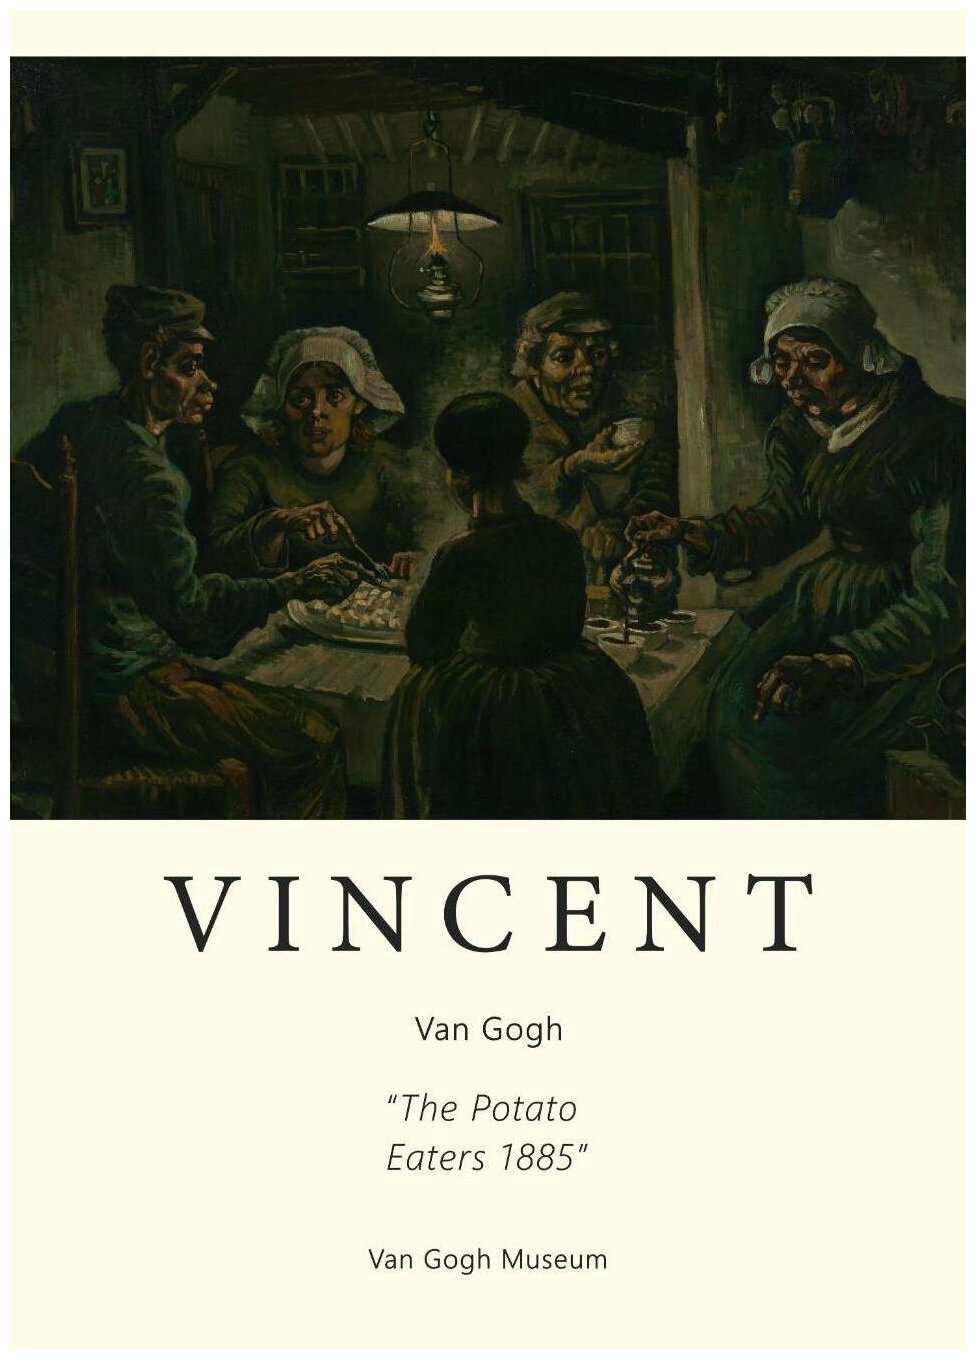 Винсент Ван Гог - Едоки картофеля в раме